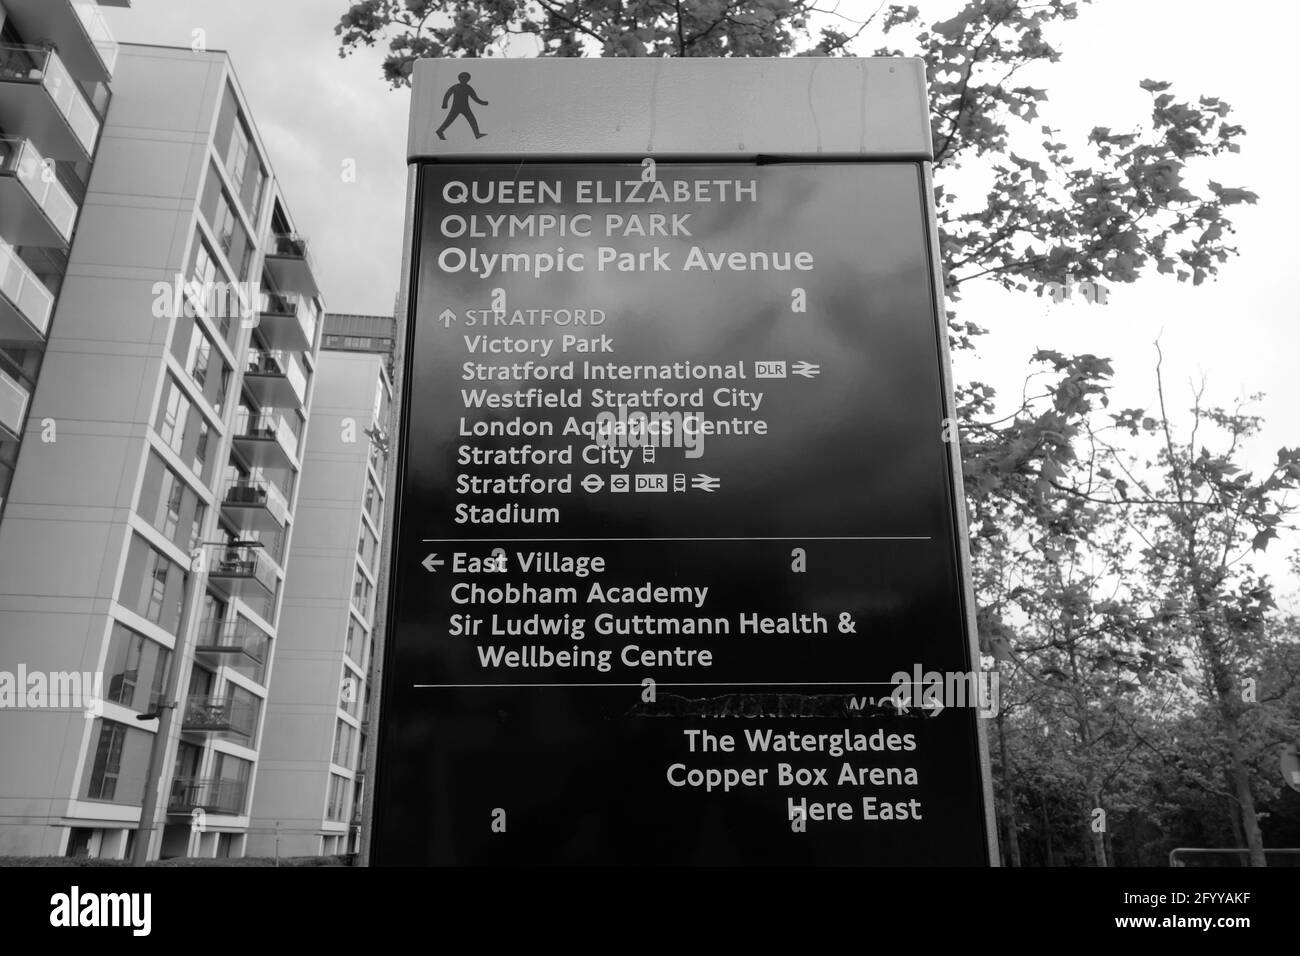 Signalisation du parc olympique Queen Elizabeth, Stratford, Londres. Banque D'Images